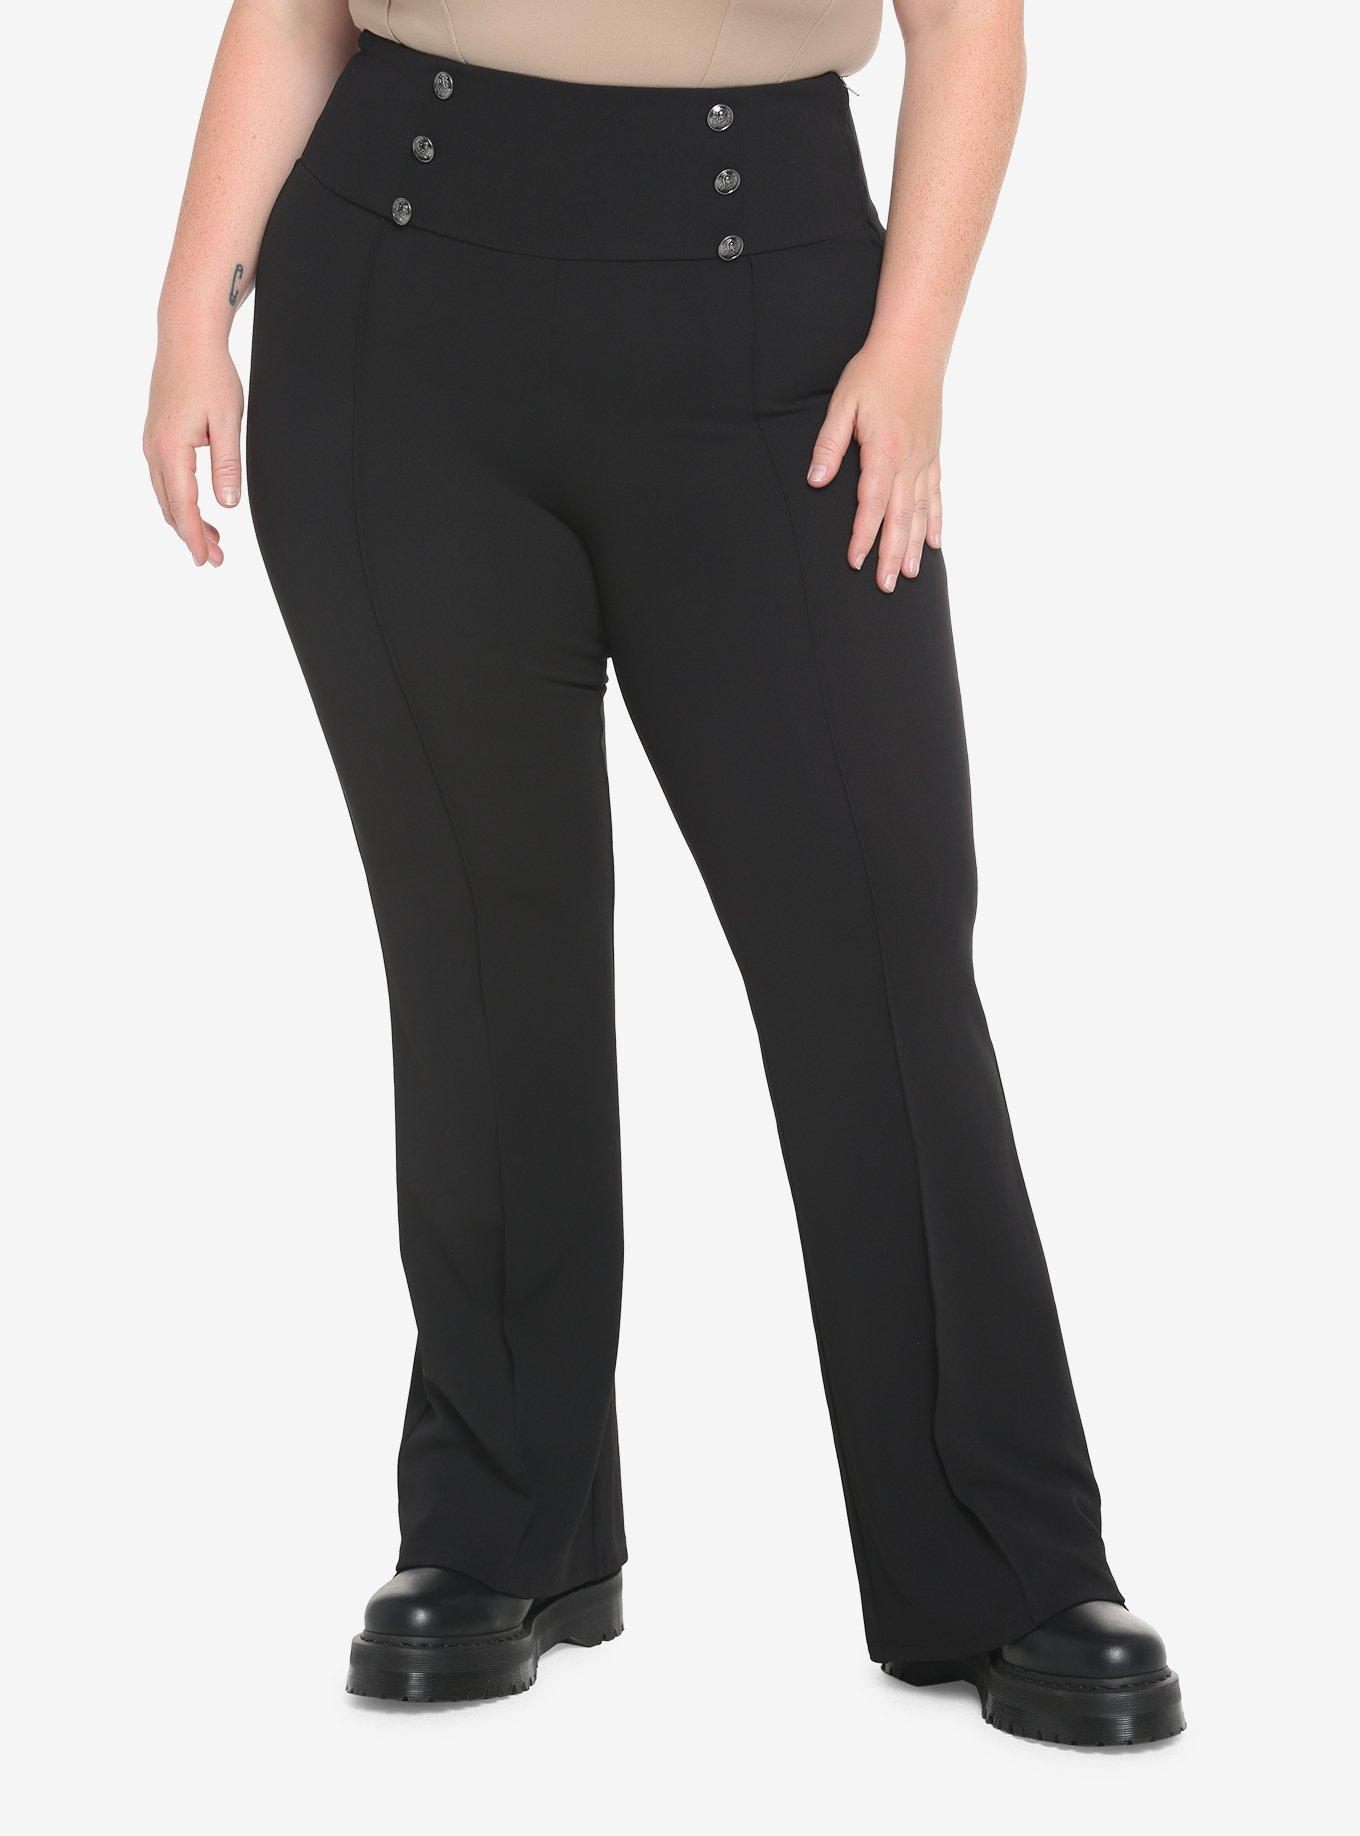 Black Hi-Rise Flare Pants Plus Size, BLACK, hi-res